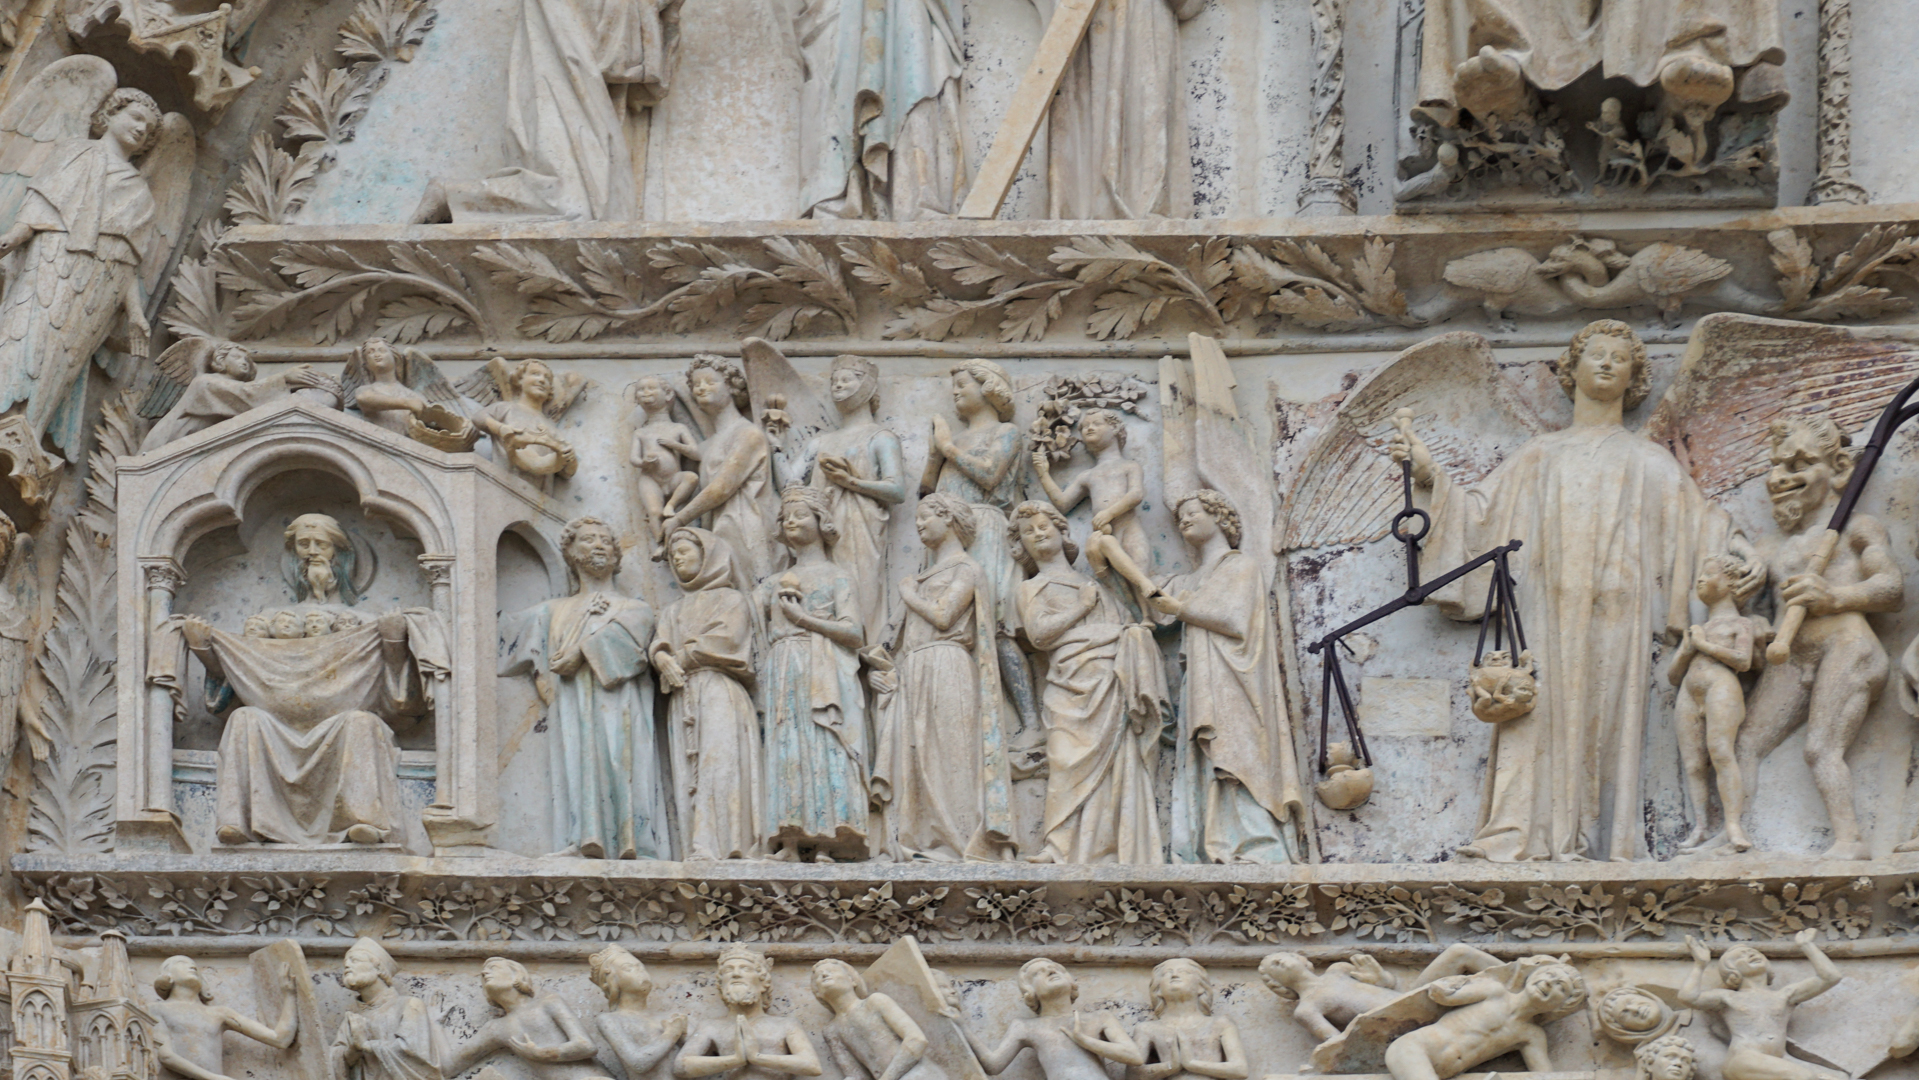 Cathédrale de Bourges, les élus entrent dans le paradis |© Maurice Page 